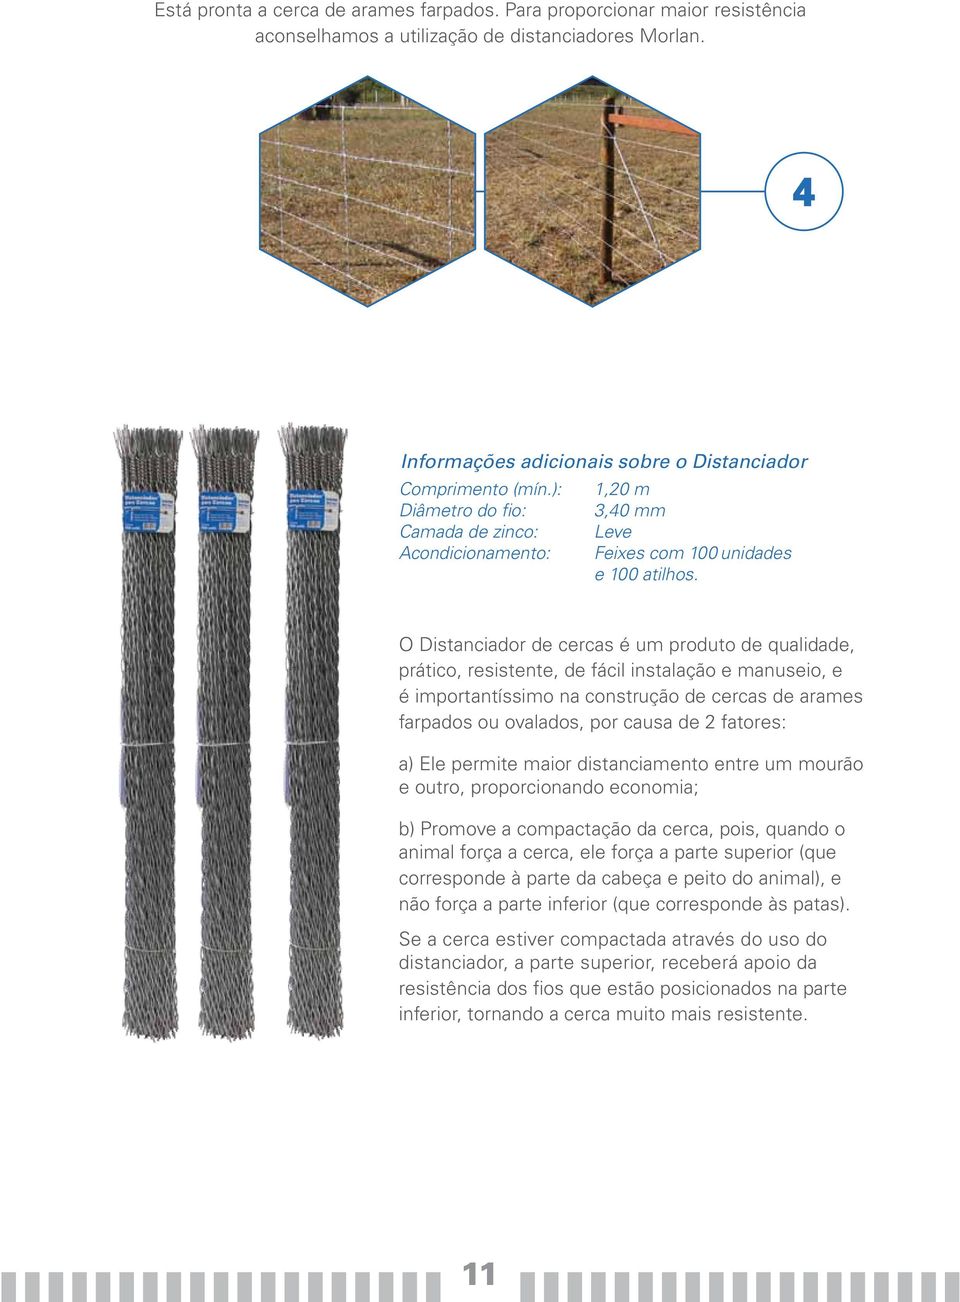 O Distanciador de cercas é um produto de qualidade, prático, resistente, de fácil instalação e manuseio, e é importantíssimo na construção de cercas de arames farpados ou ovalados, por causa de 2